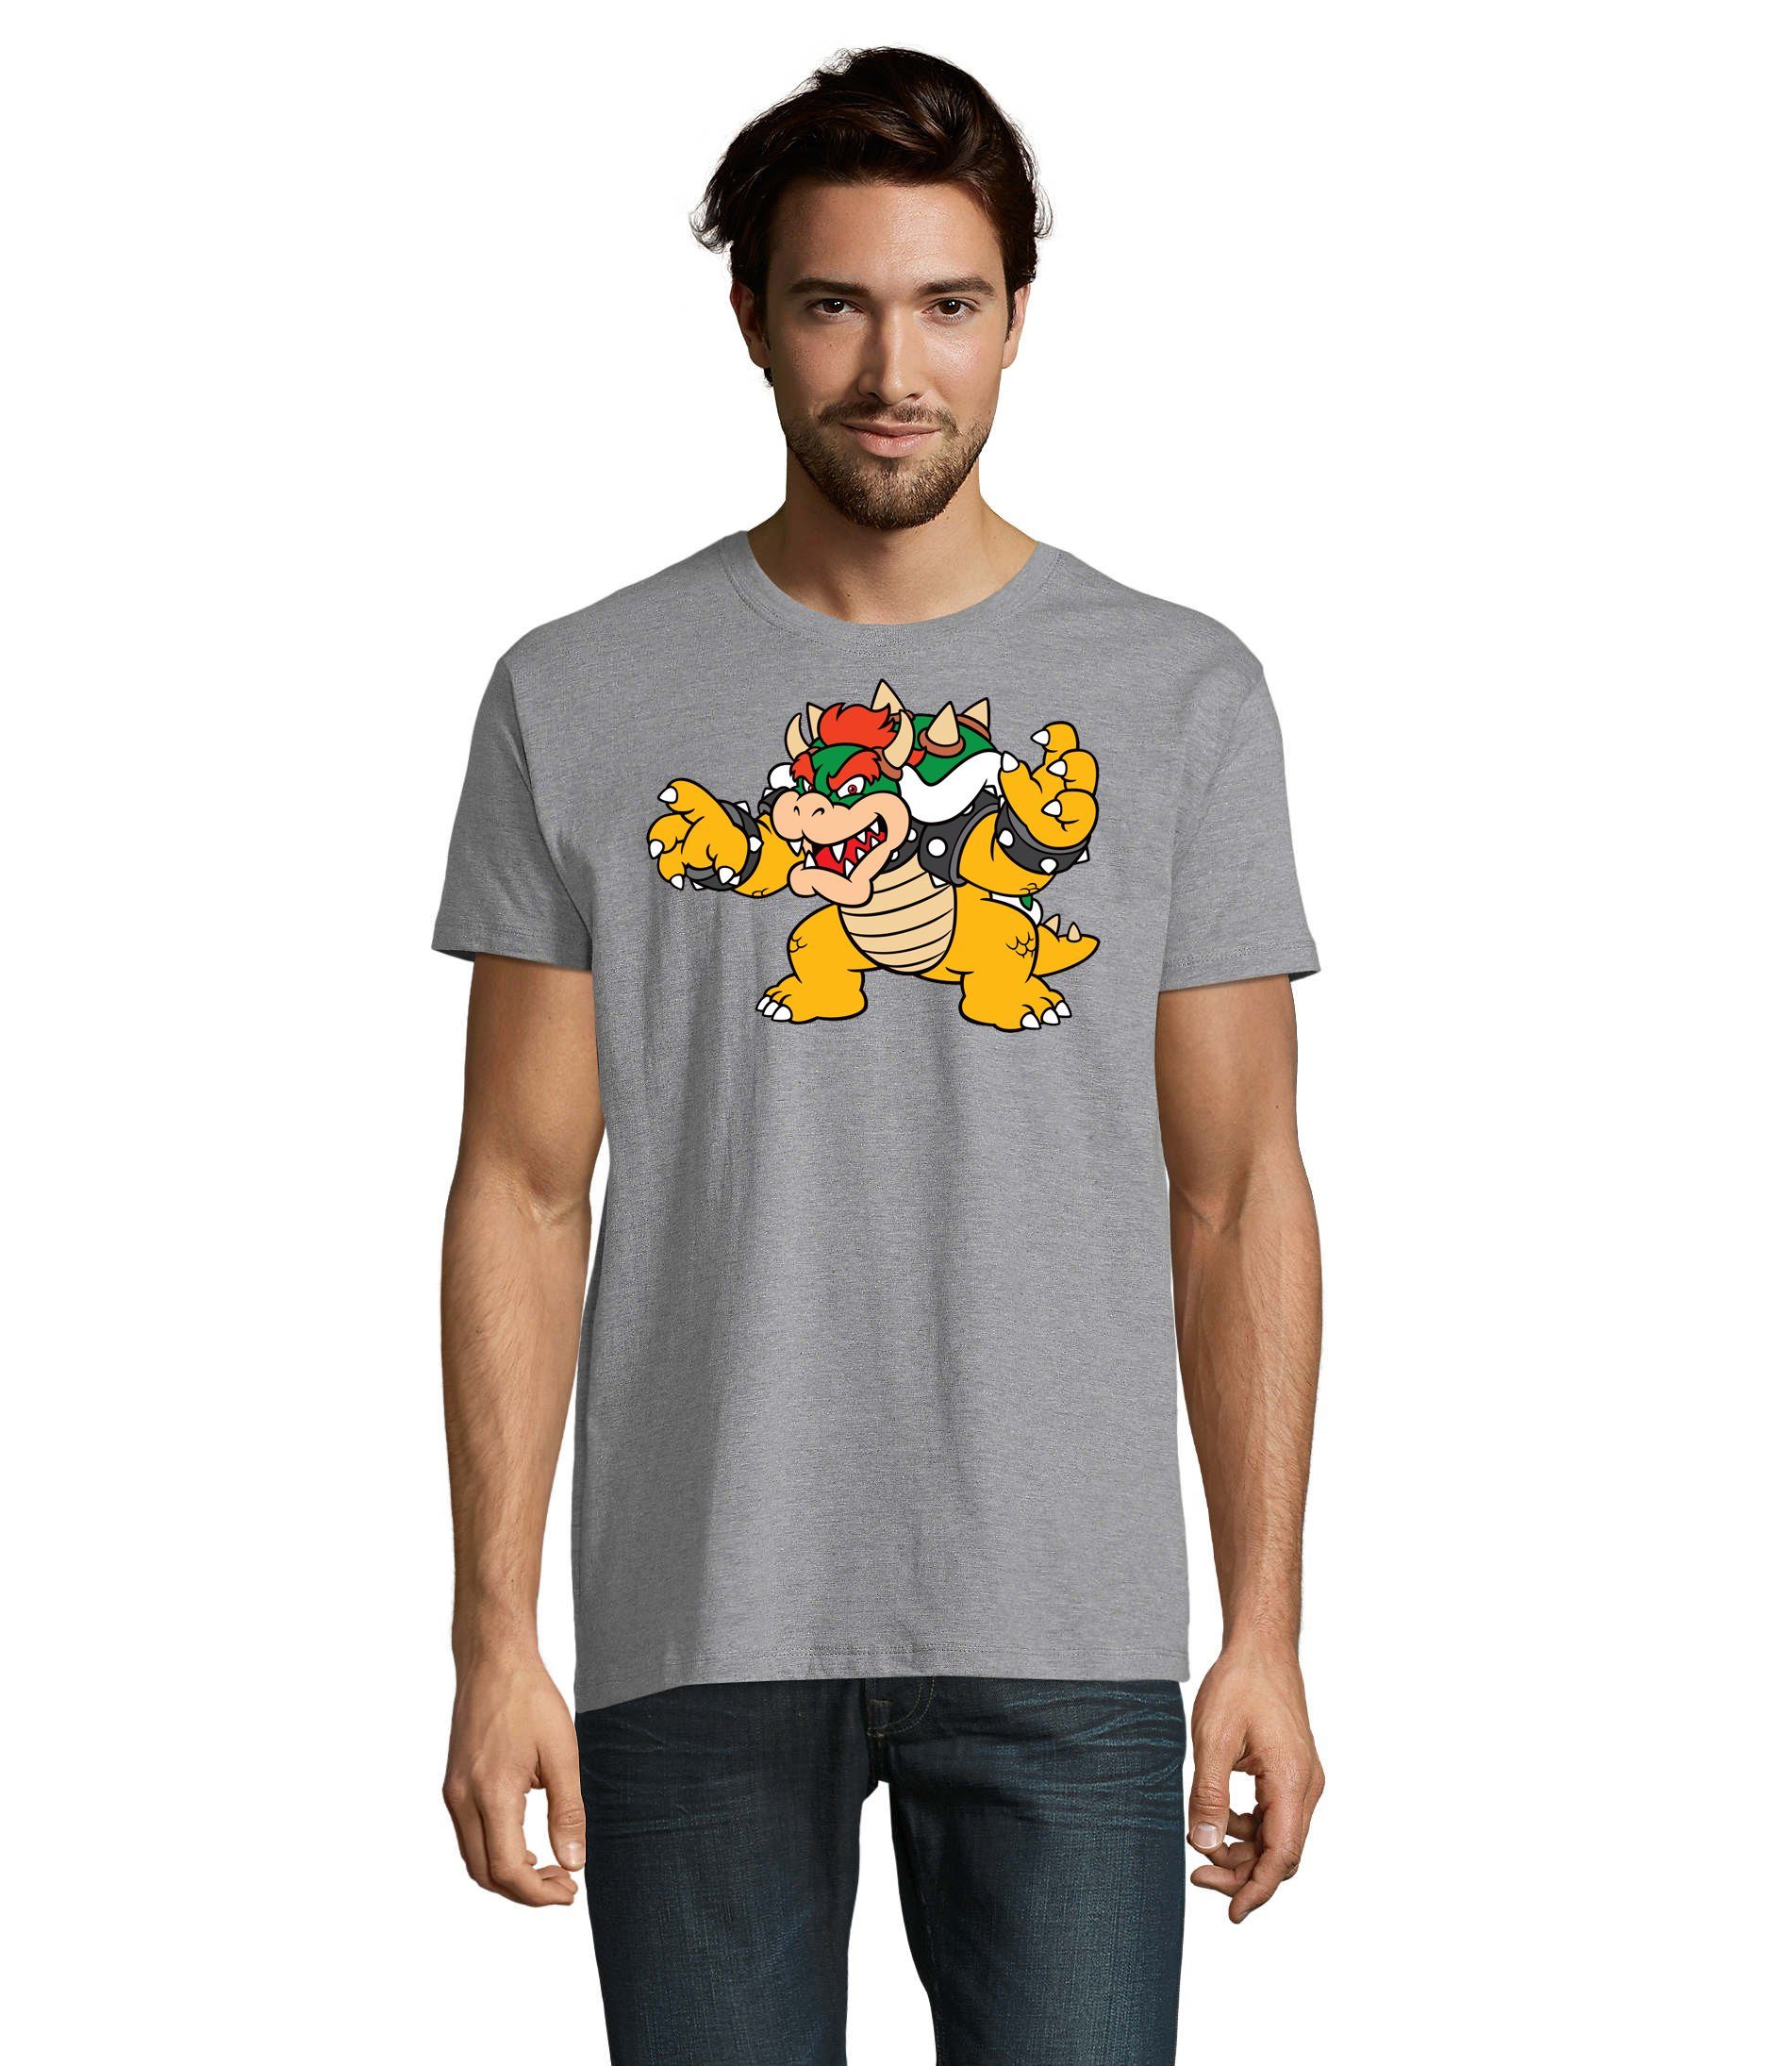 Blondie & Brownie T-Shirt Herren Nintendo Mario Yoshi Luigi Game Gamer Gaming Konsole Grau